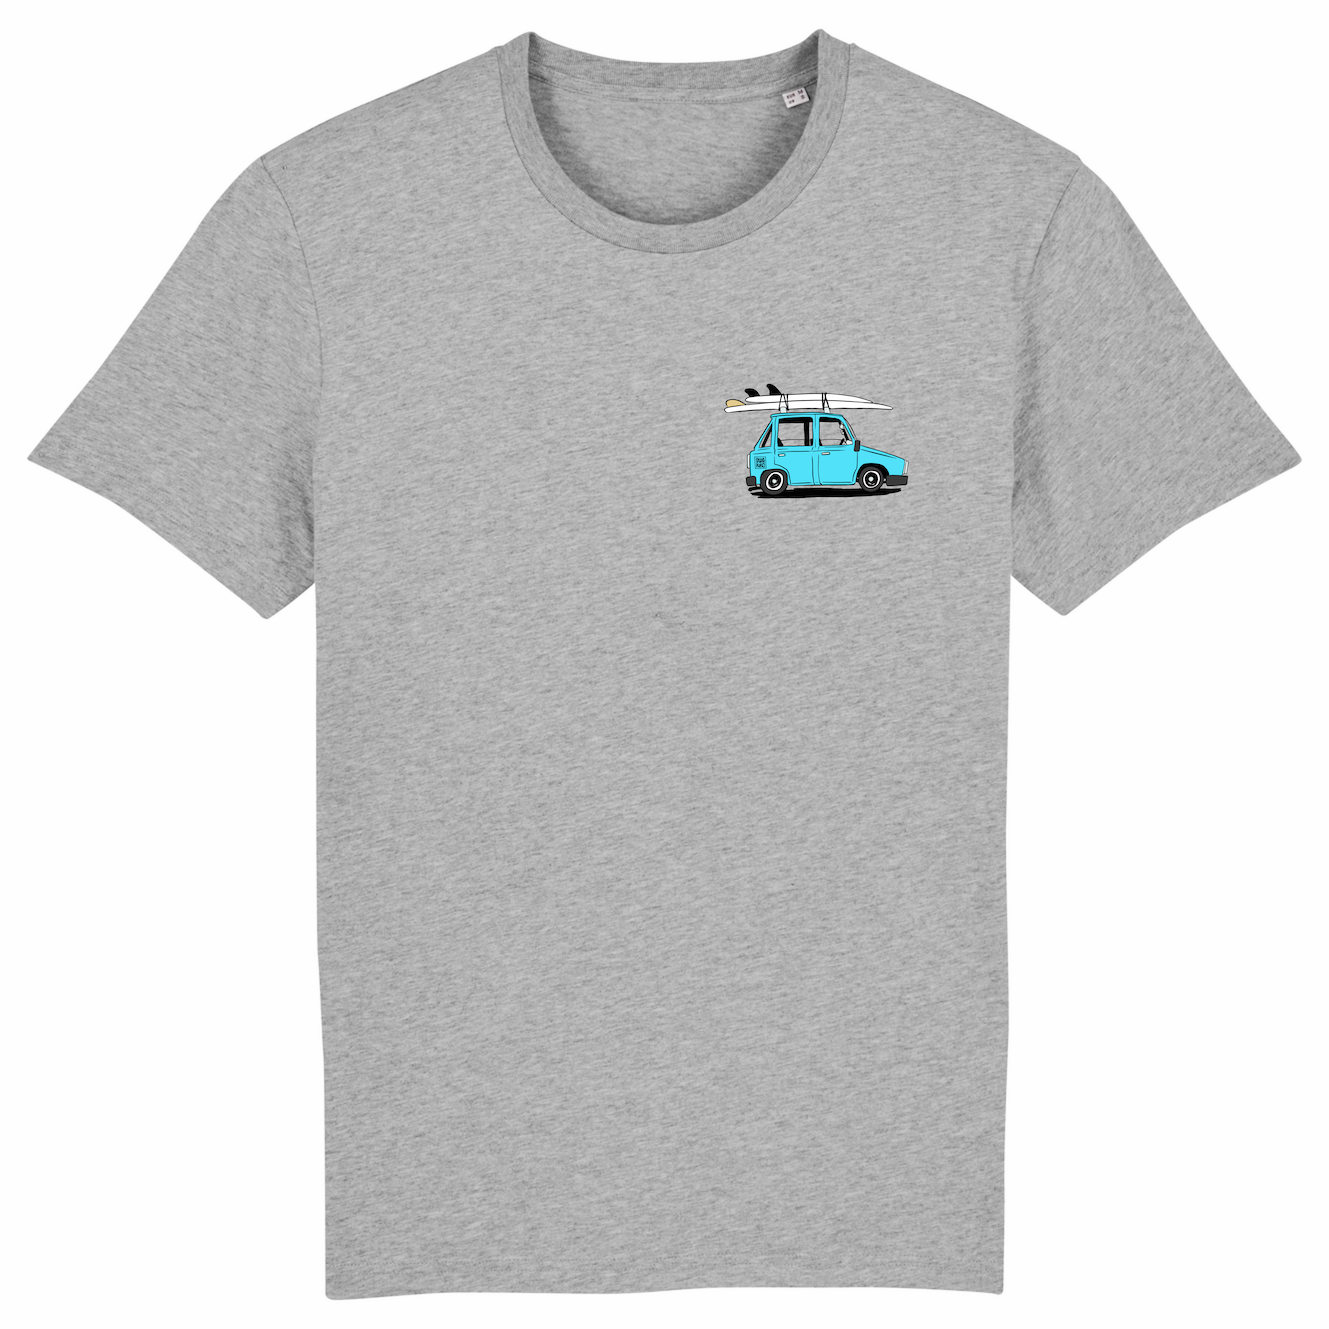 Grijs T-shirt met borstprint van een auto met Swakiko sticker en twee surfbaords op het dak en 